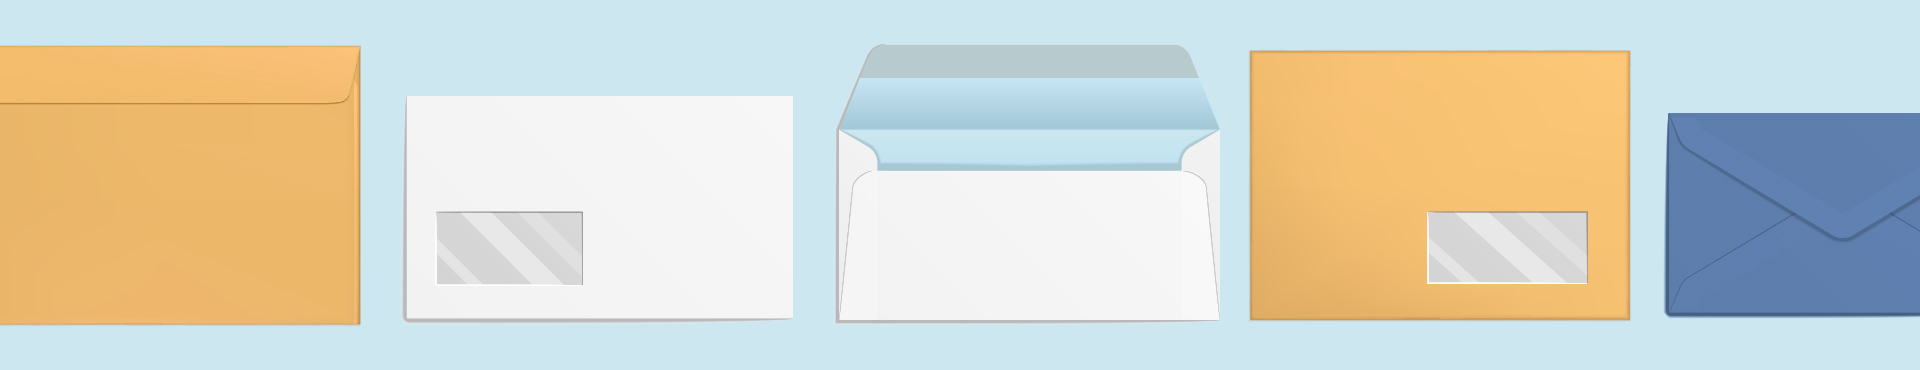 Enveloppe de courrier : pourquoi choisir un modèle plastique ?